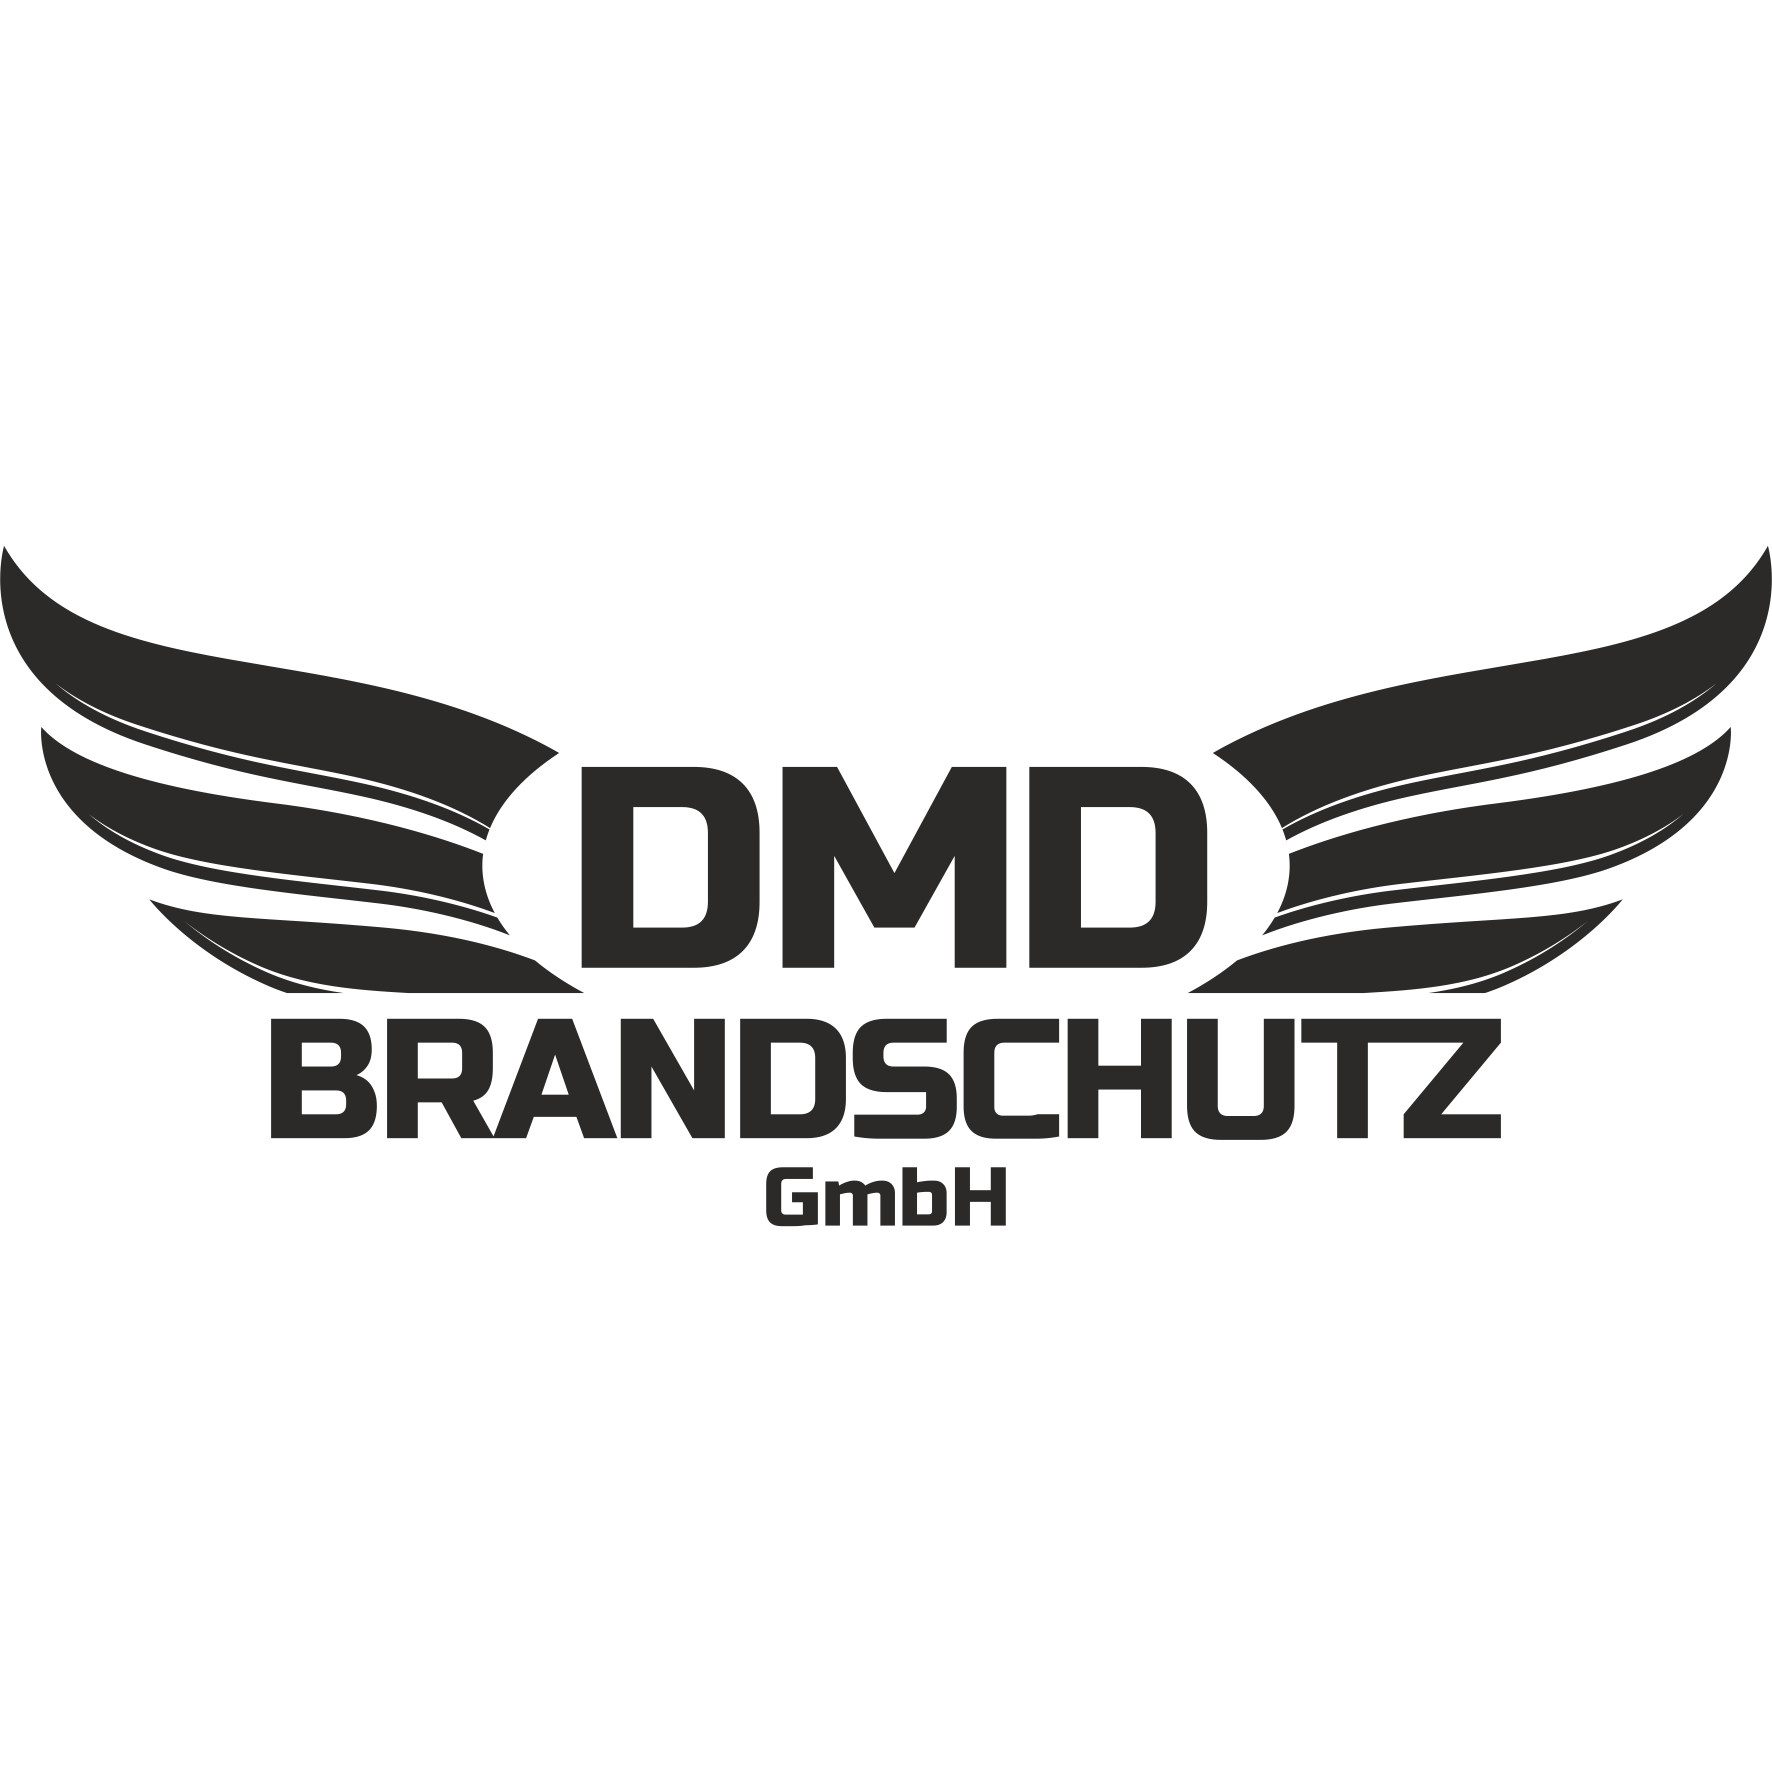 DMD-Brandschutz GmbH Logo